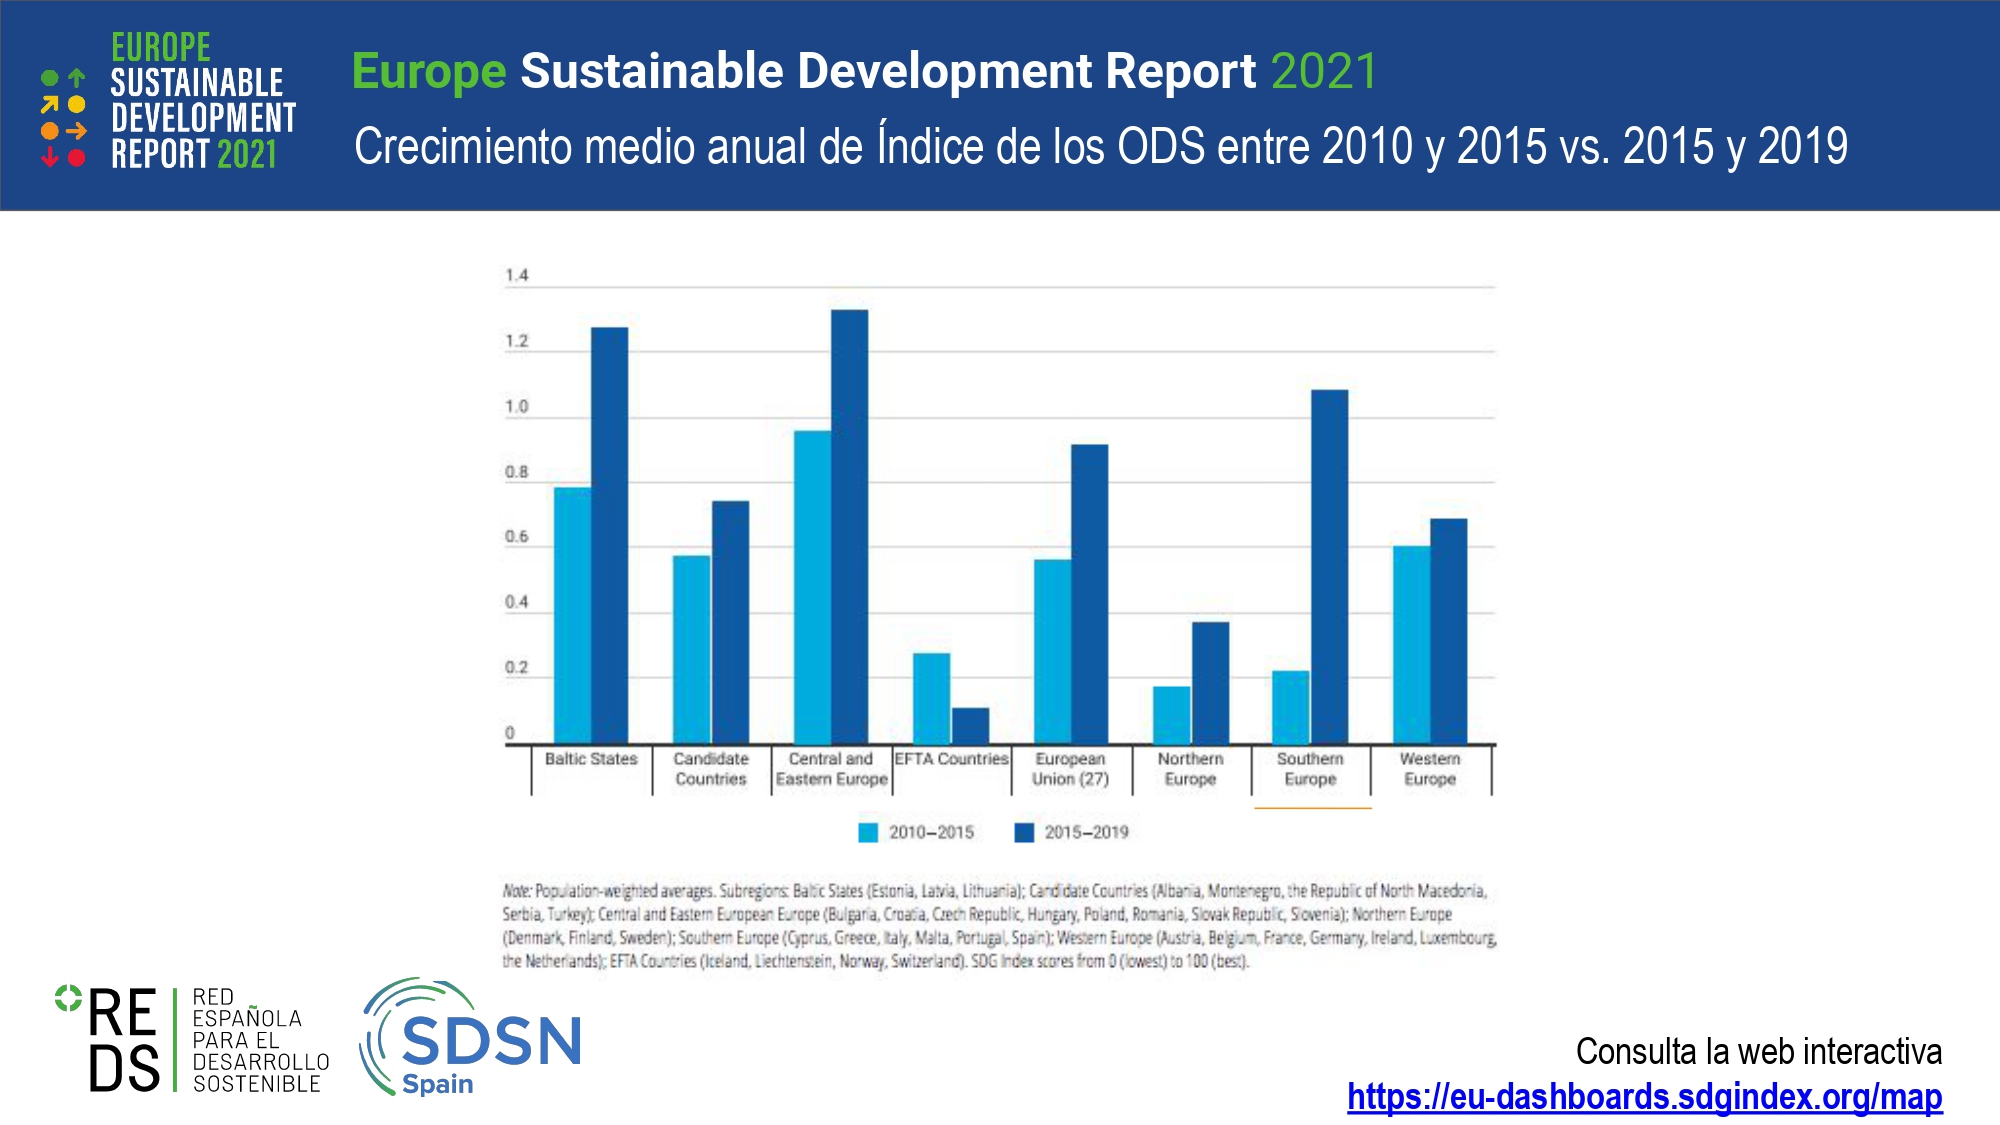 Crecimiento Anual de los ODS ESDR2021